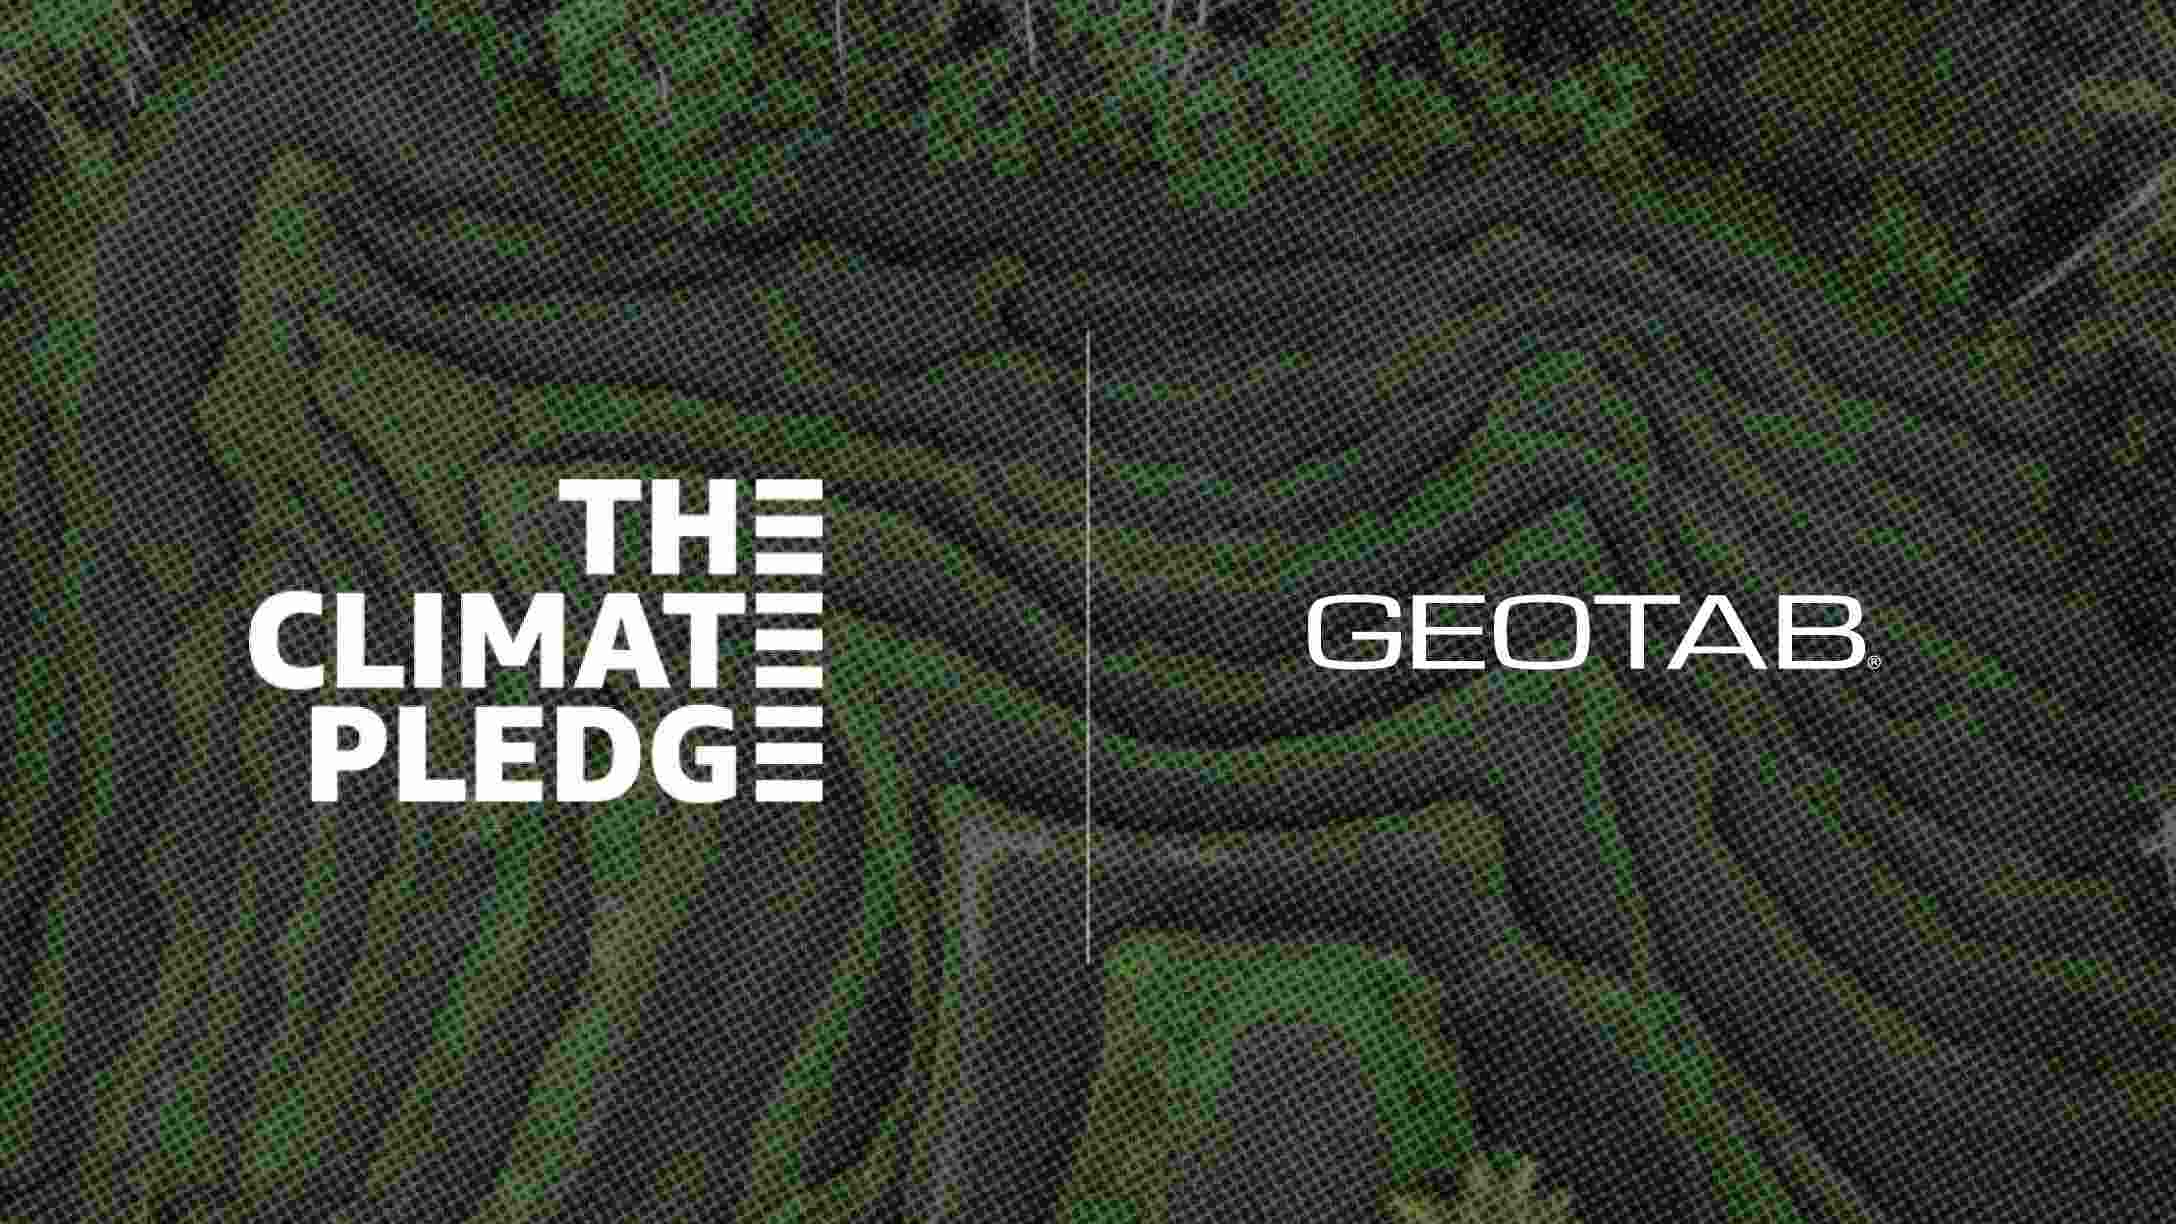 Imagen de fondo de montañas verdes, con el logo de The Clomate Pledge, y de Geotab